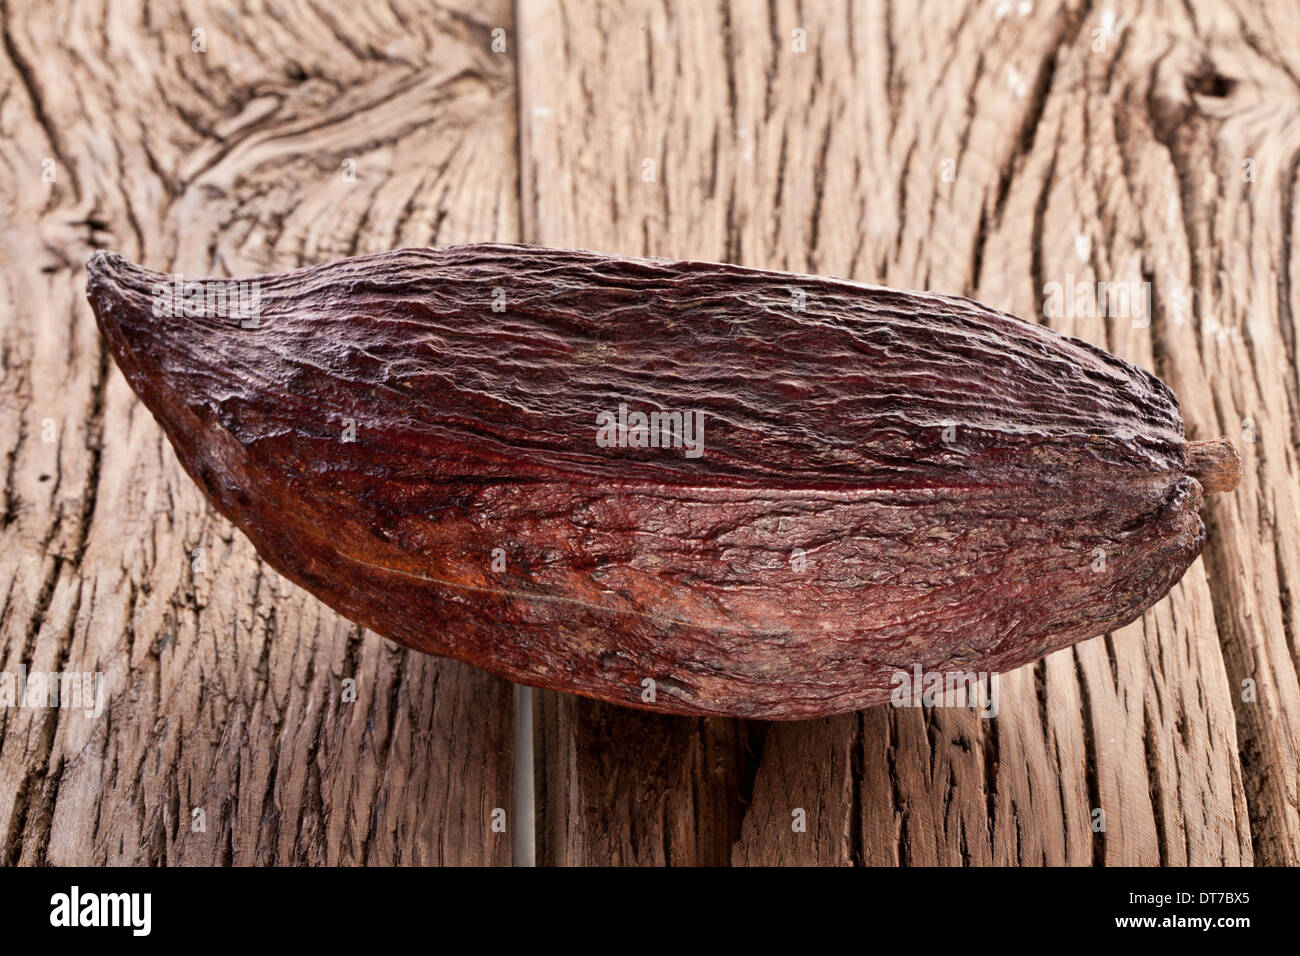 Les cabosses de cacao sur une table en bois. Banque D'Images